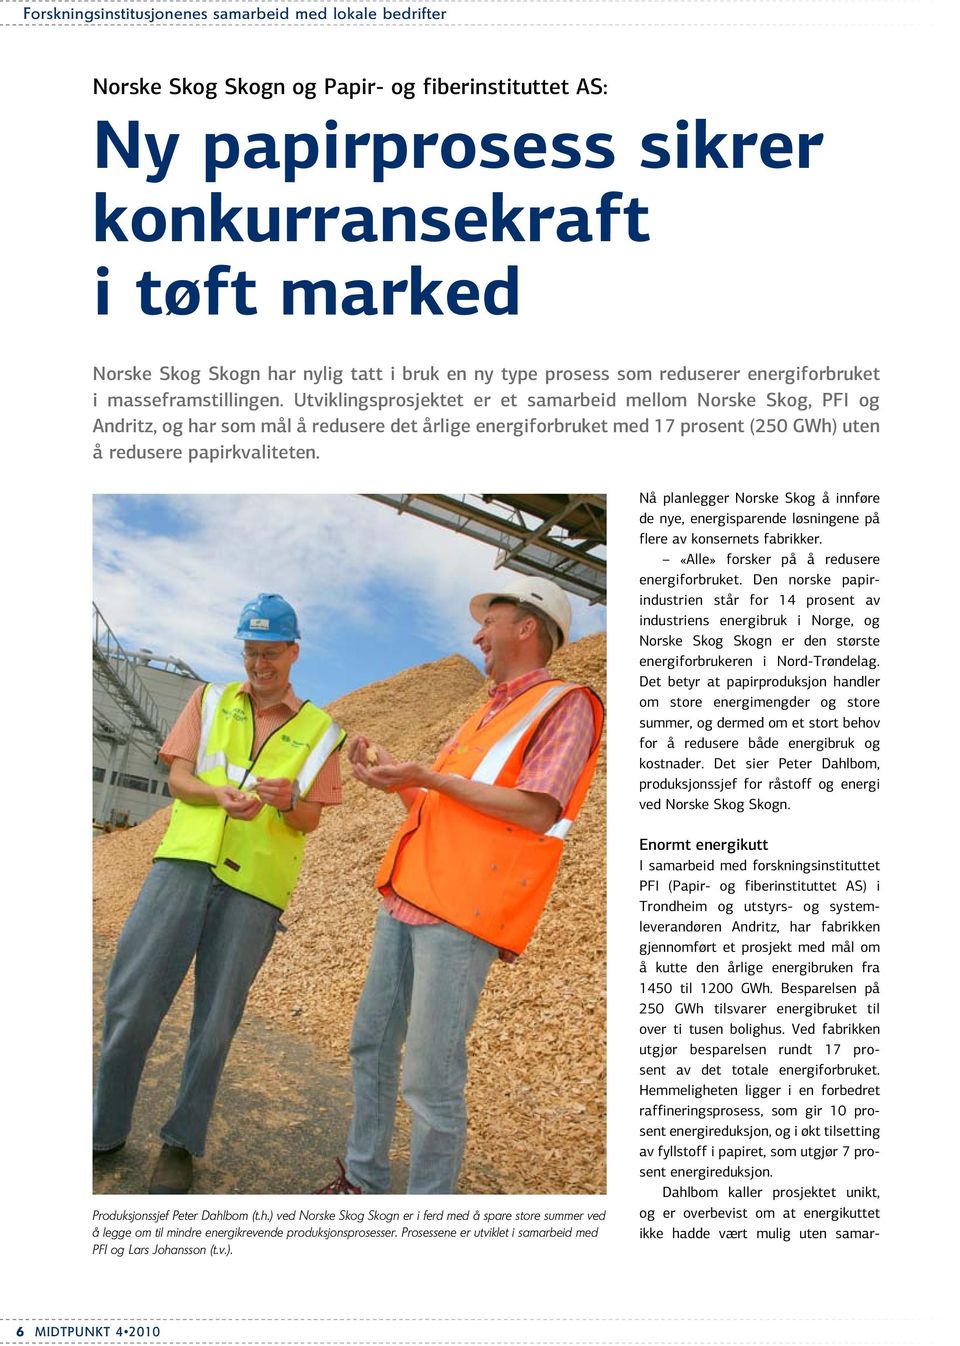 Utviklingsprosjektet er et samarbeid mellom Norske Skog, PFI og Andritz, og har som mål å redusere det årlige energiforbruket med 17 prosent (250 GWh) uten å redusere papirkvaliteten.